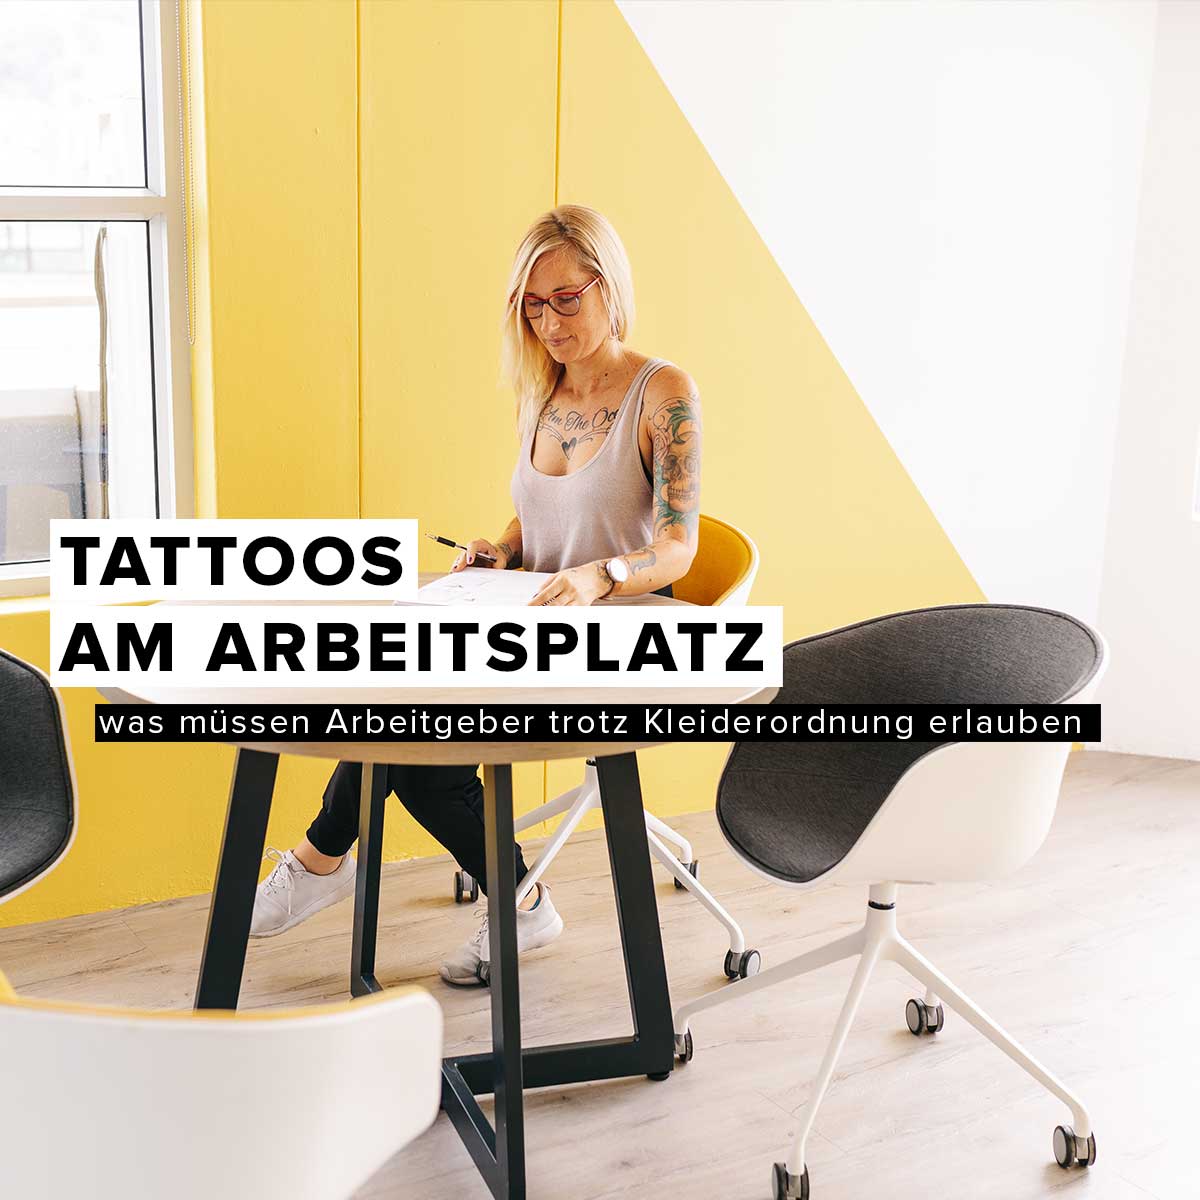 Tattoos am Arbeitsplatz – was müssen Arbeitgeber trotz Kleiderordnung erlauben?